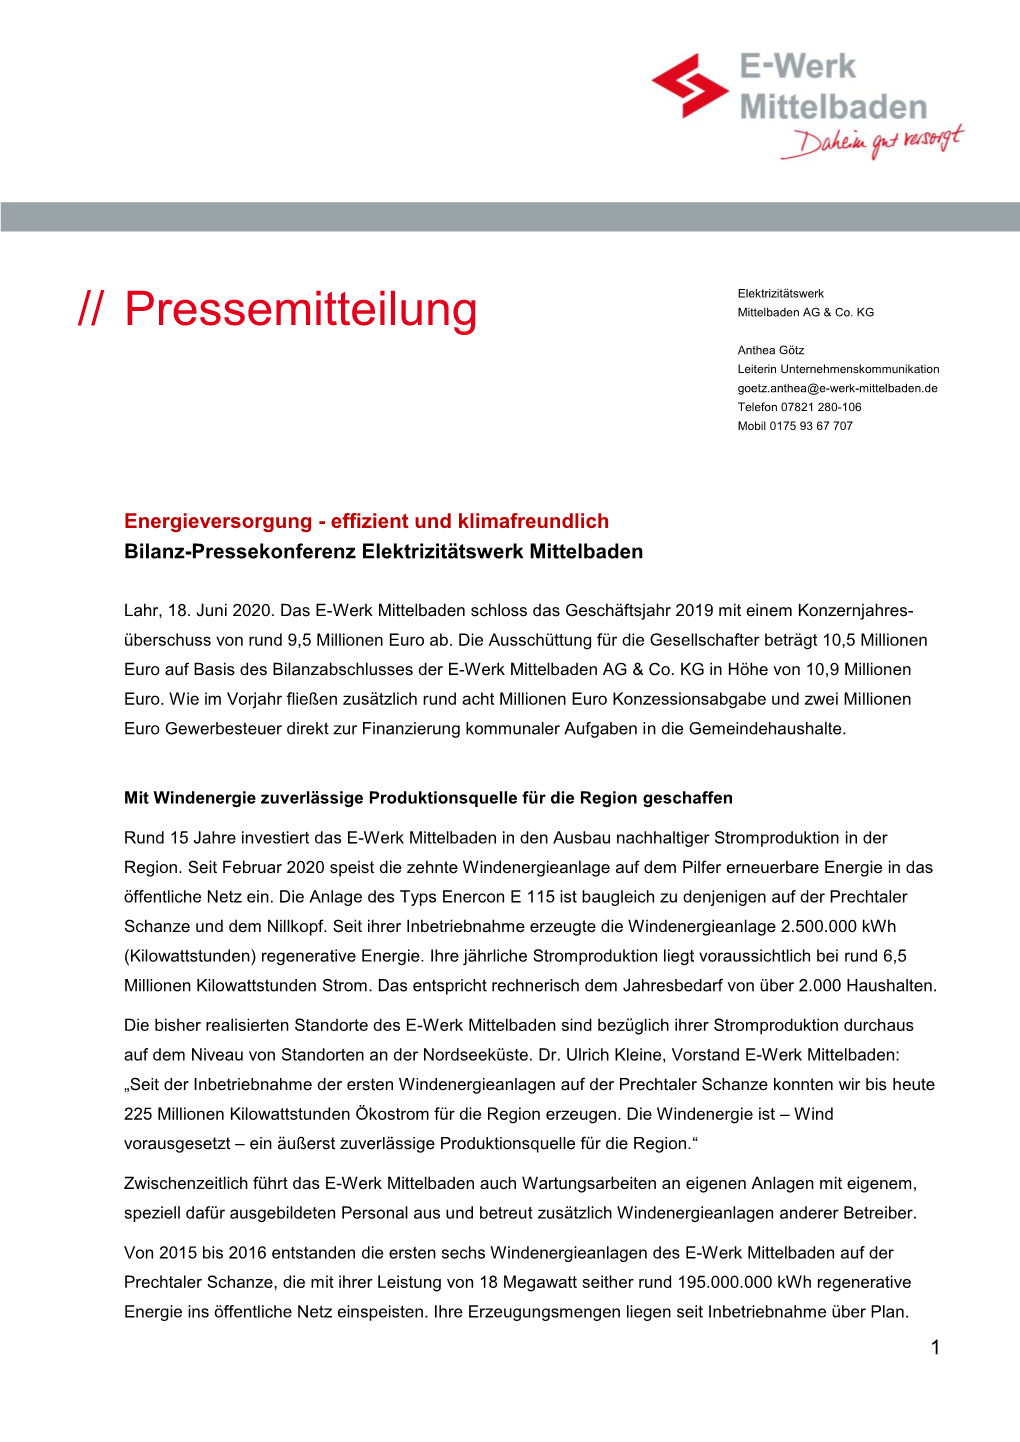 Pressemitteilung Mittelbaden AG & Co